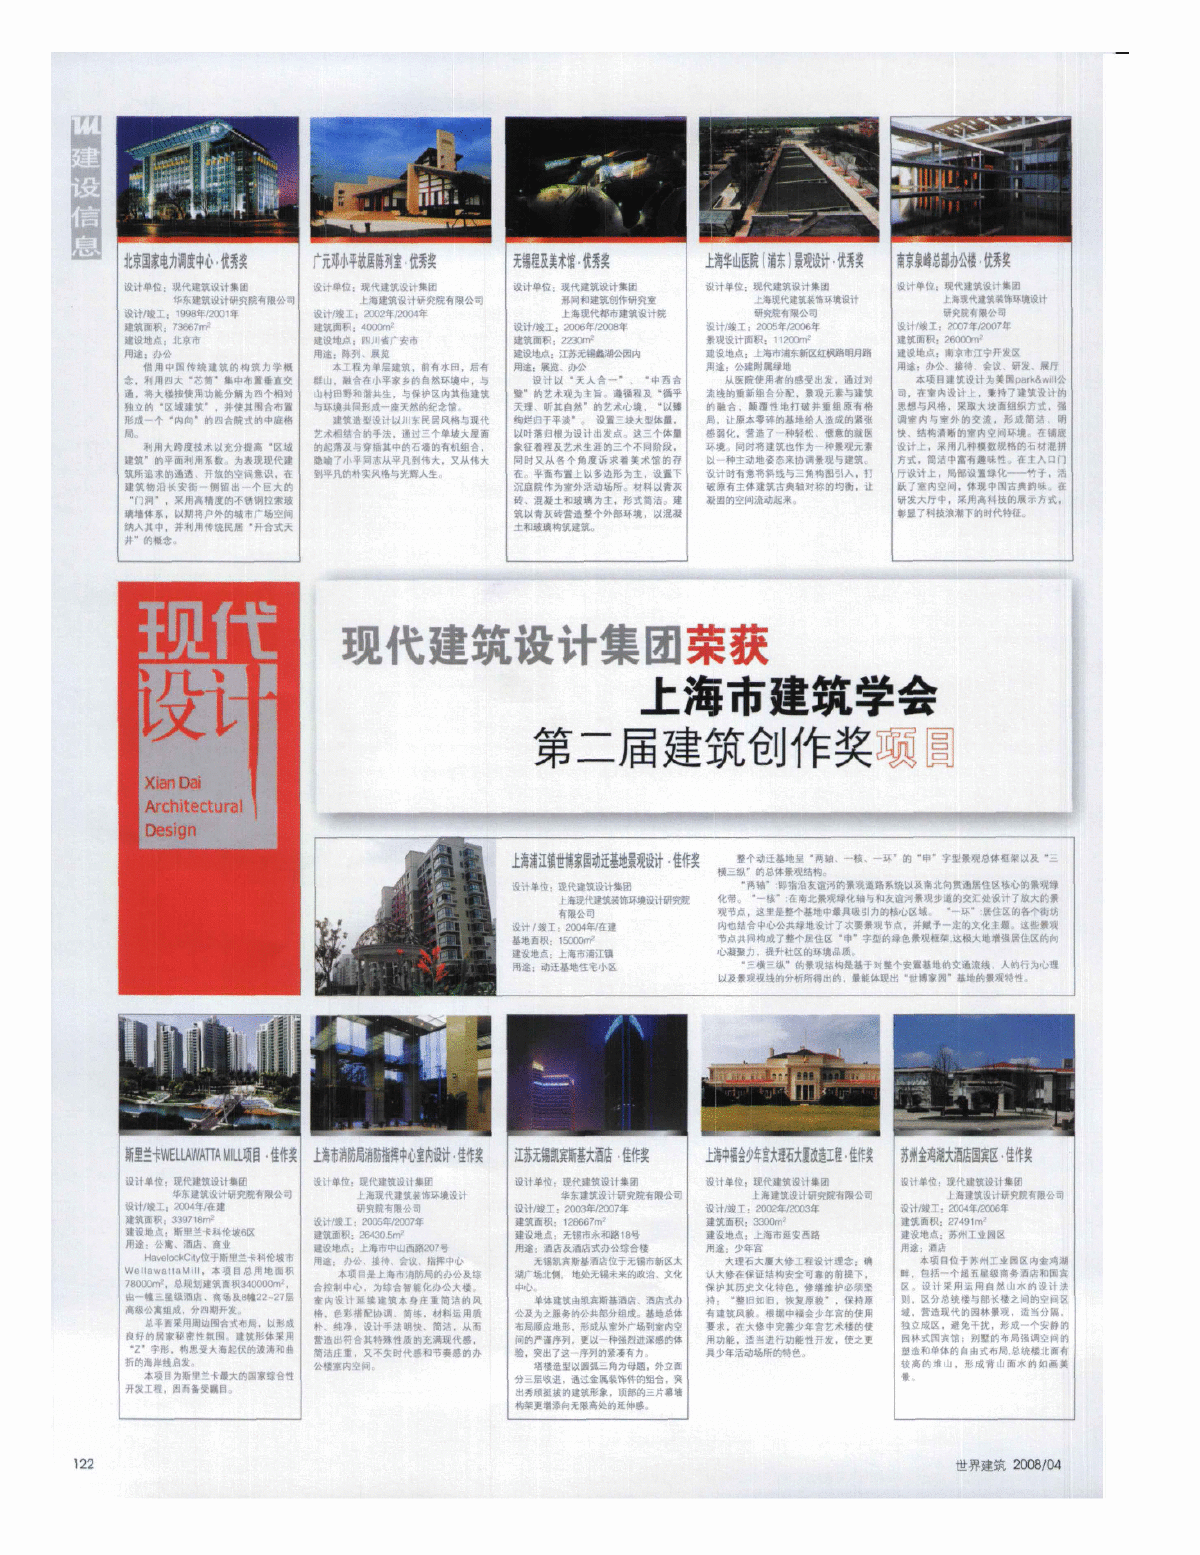 现代建筑设计集团荣获上海市建筑学会第二届建筑创作奖项目-图一